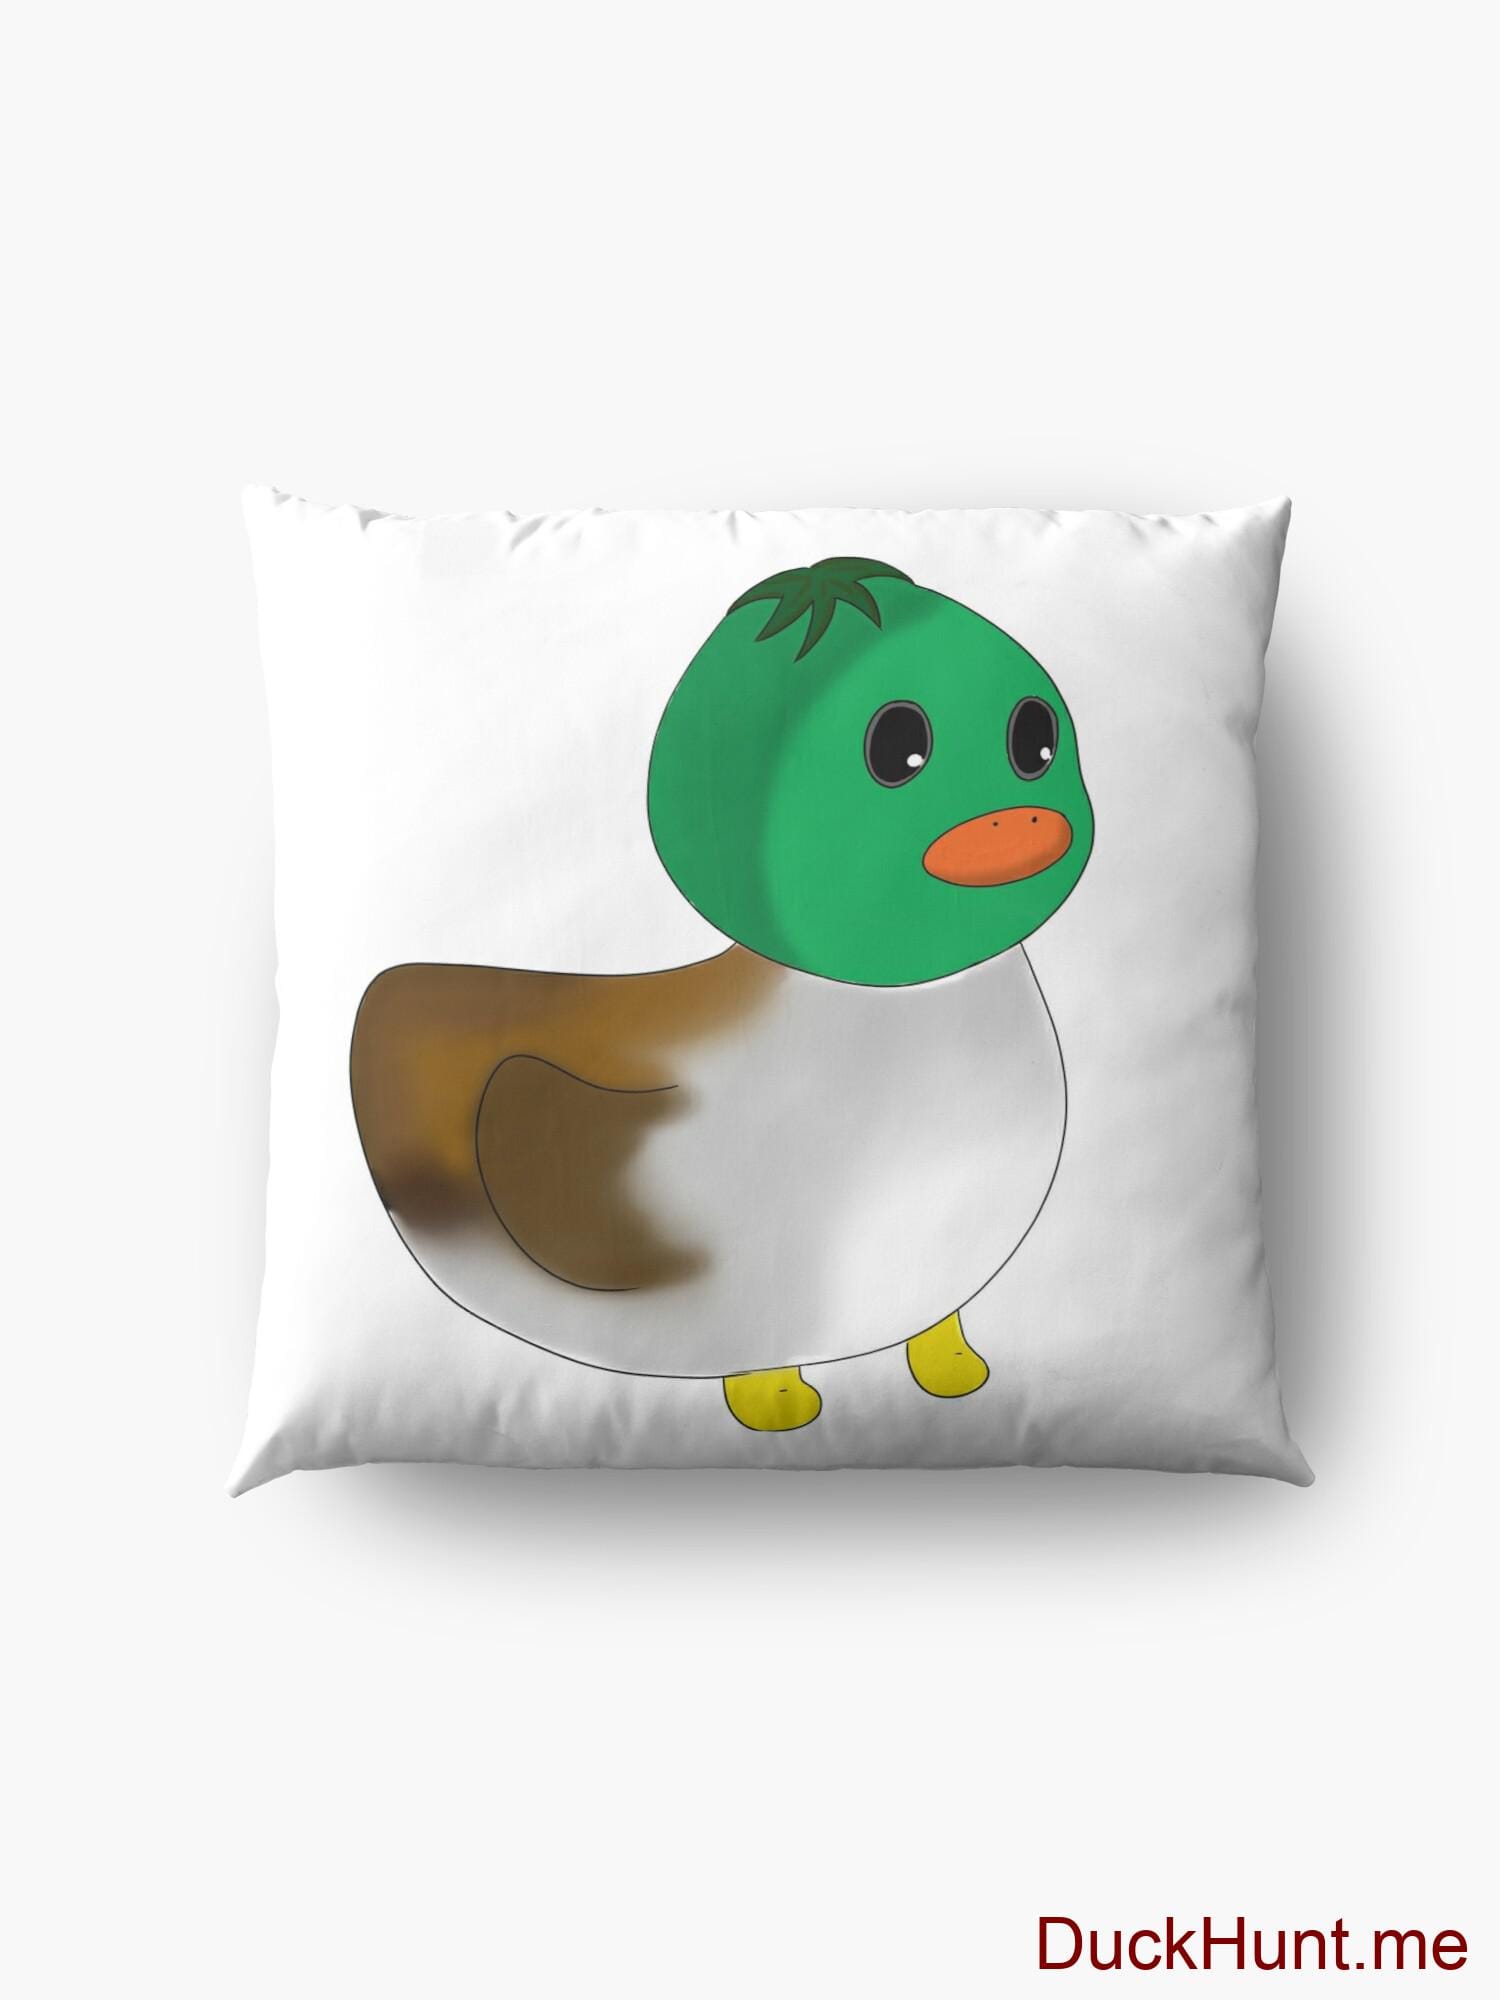 Normal Duck Floor Pillow alternative image 4